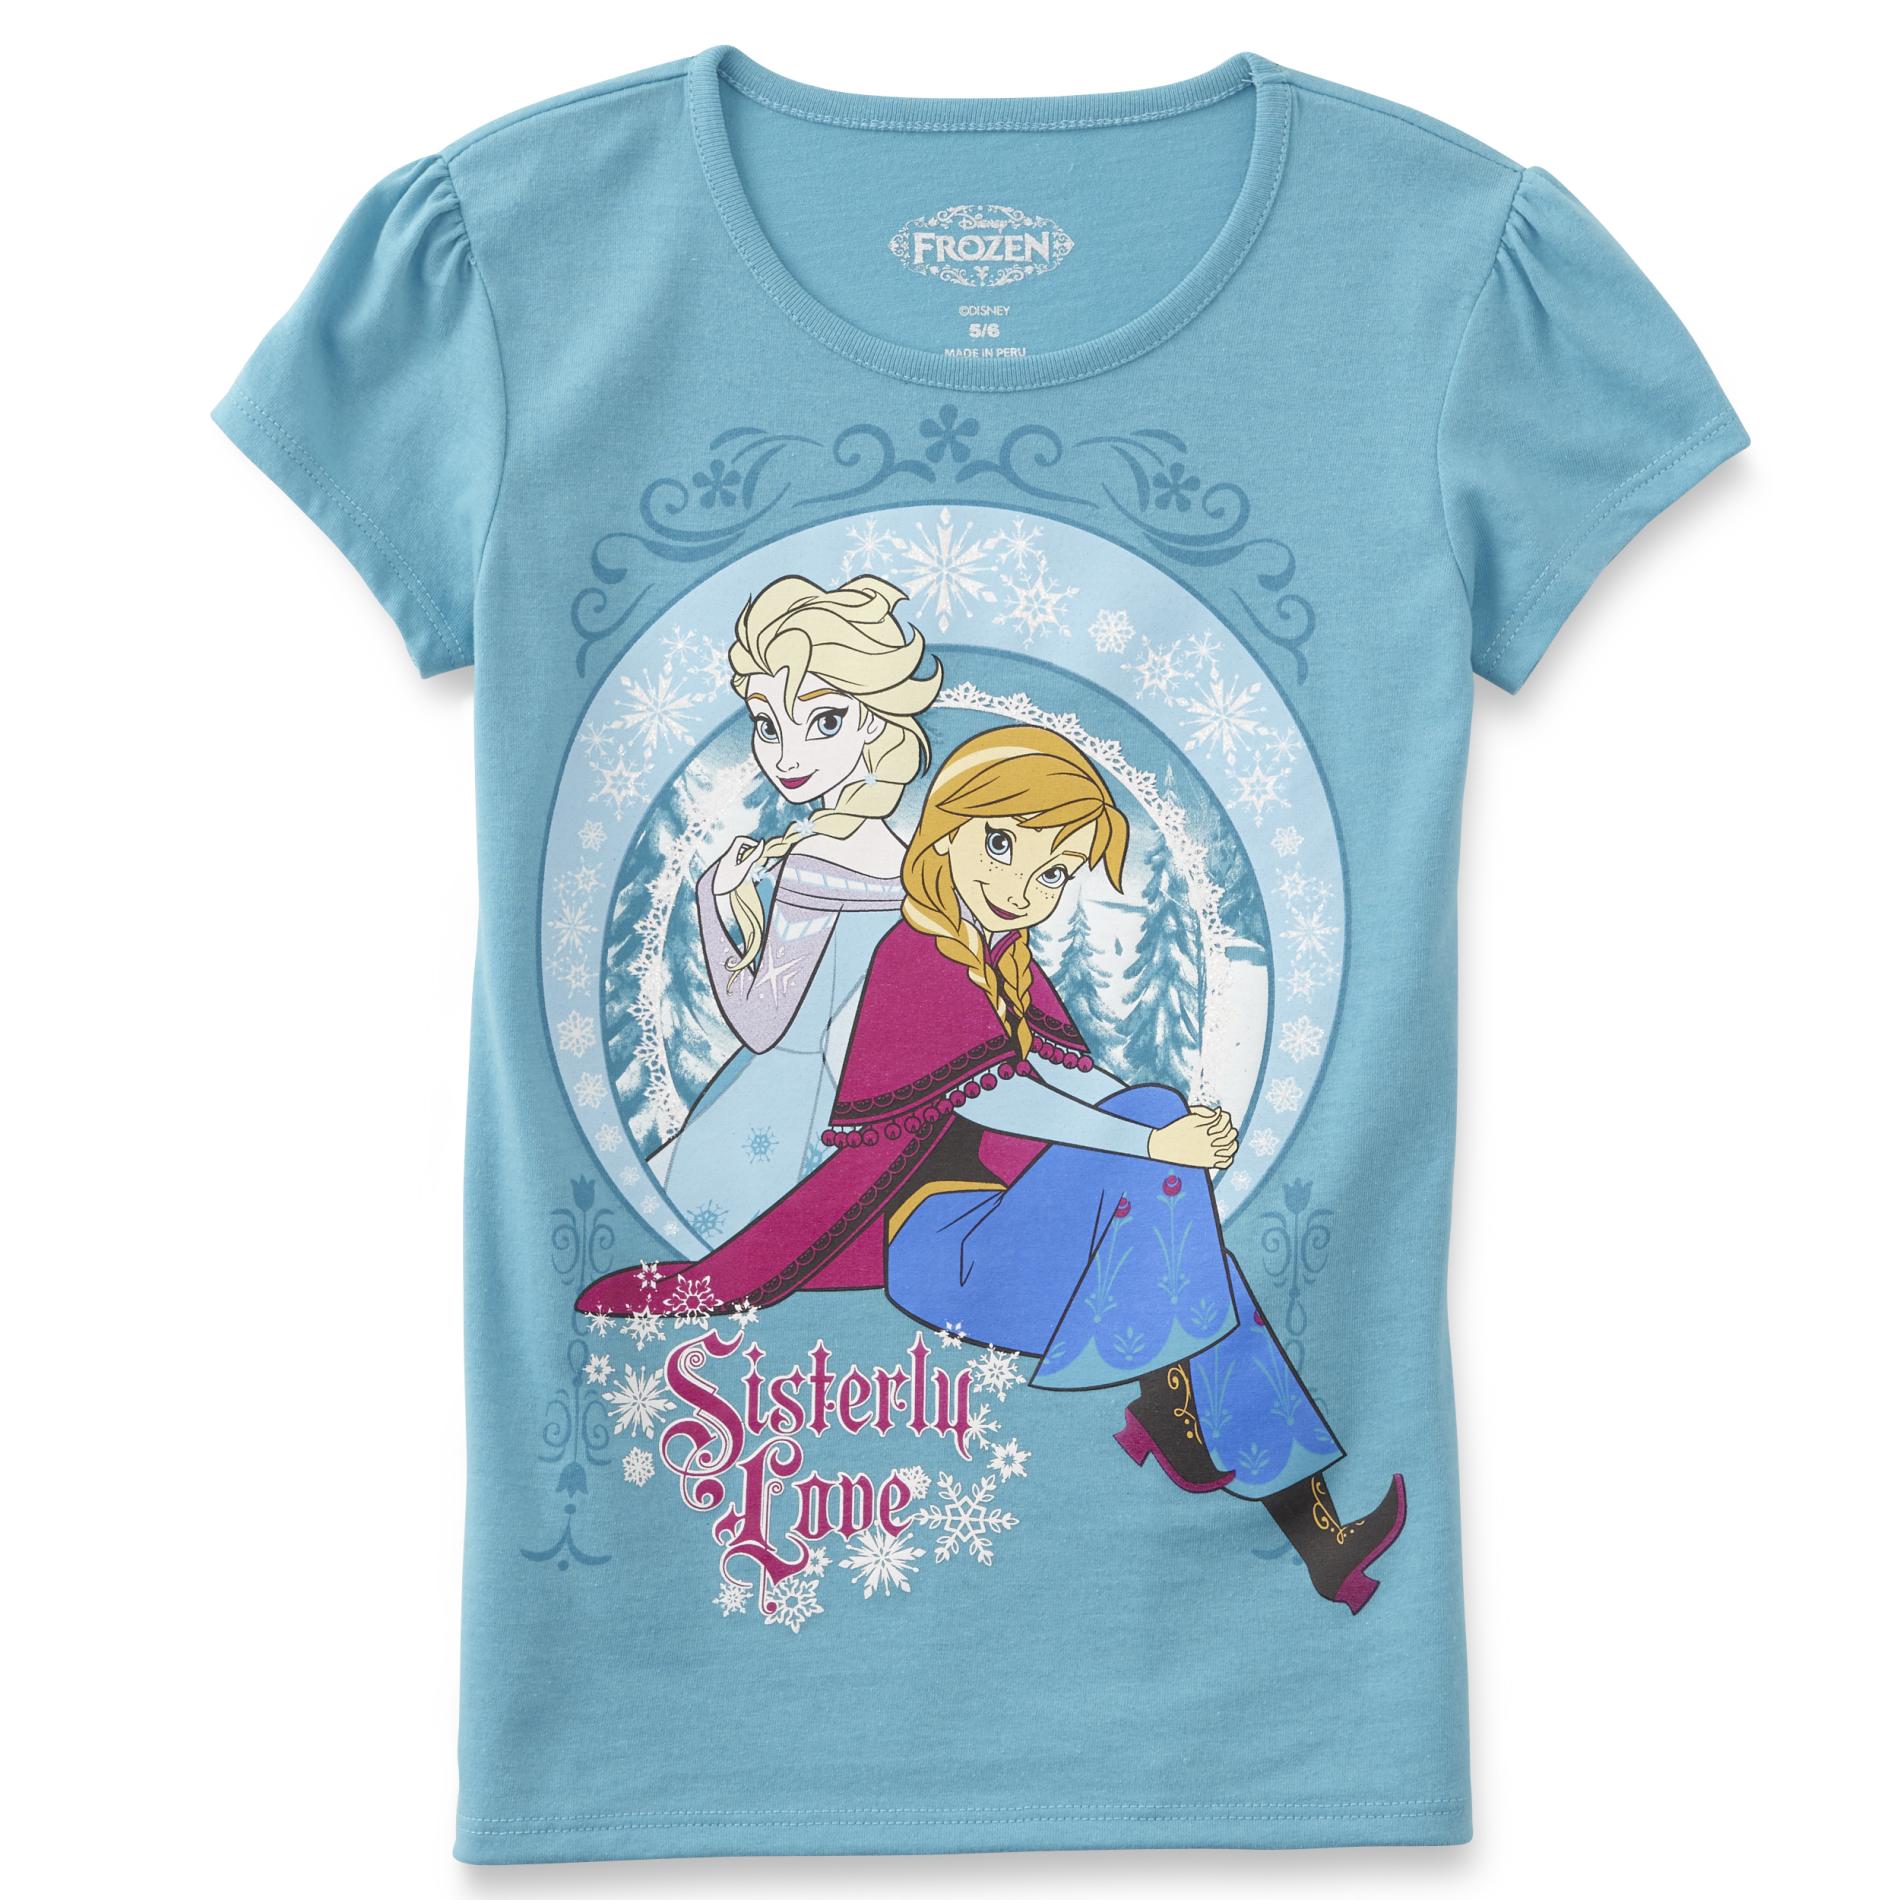 Disney Frozen Girl's T-Shirt - Sisterly Love